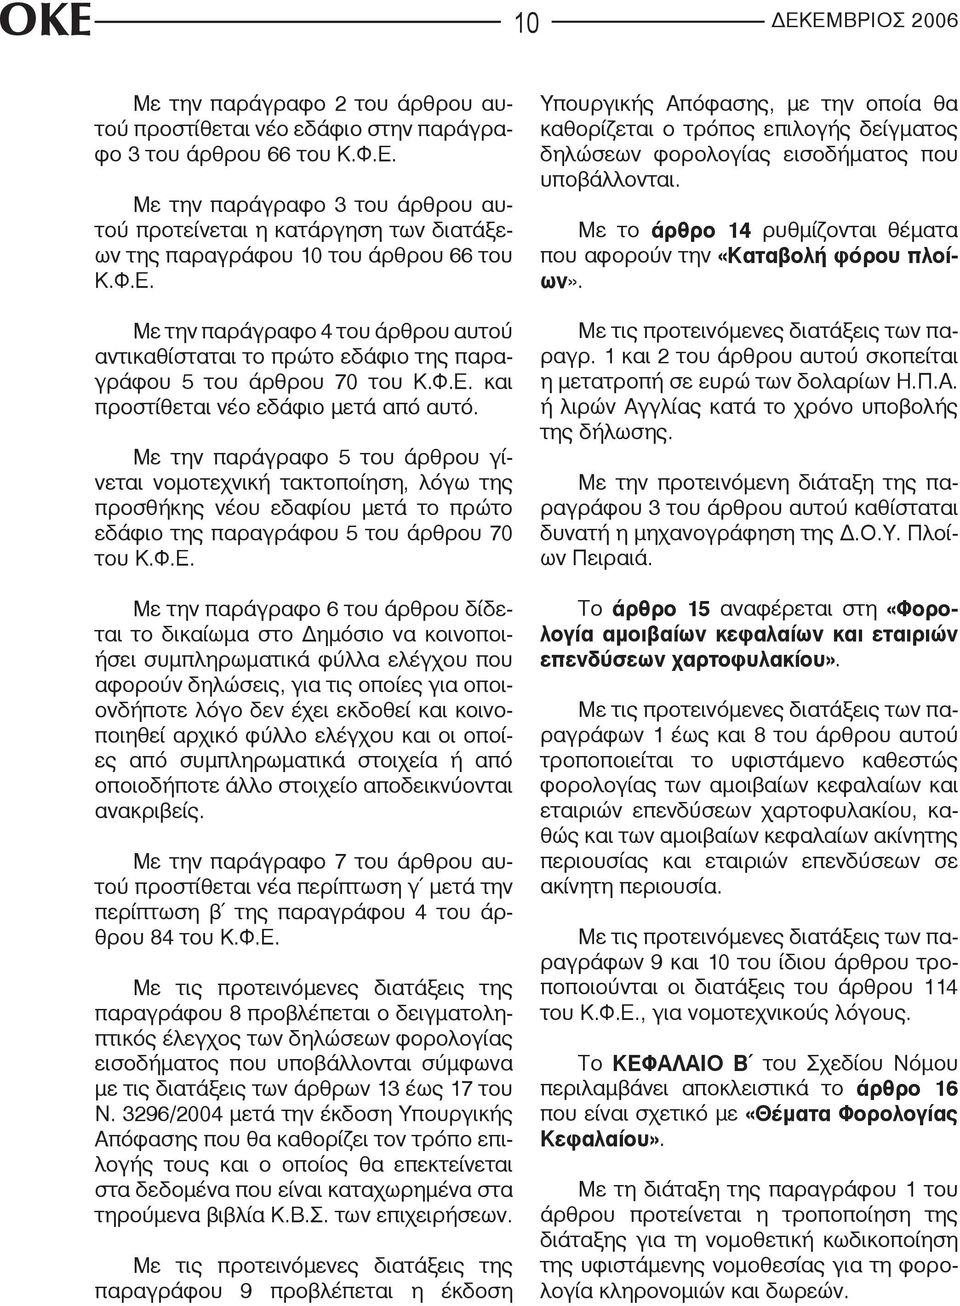 Με την παράγραφο 5 του άρθρου γίνεται νομοτεχνική τακτοποίηση, λόγω της προσθήκης νέου εδαφίου μετά το πρώτο εδάφιο της παραγράφου 5 του άρθρου 70 του Κ.Φ.Ε.